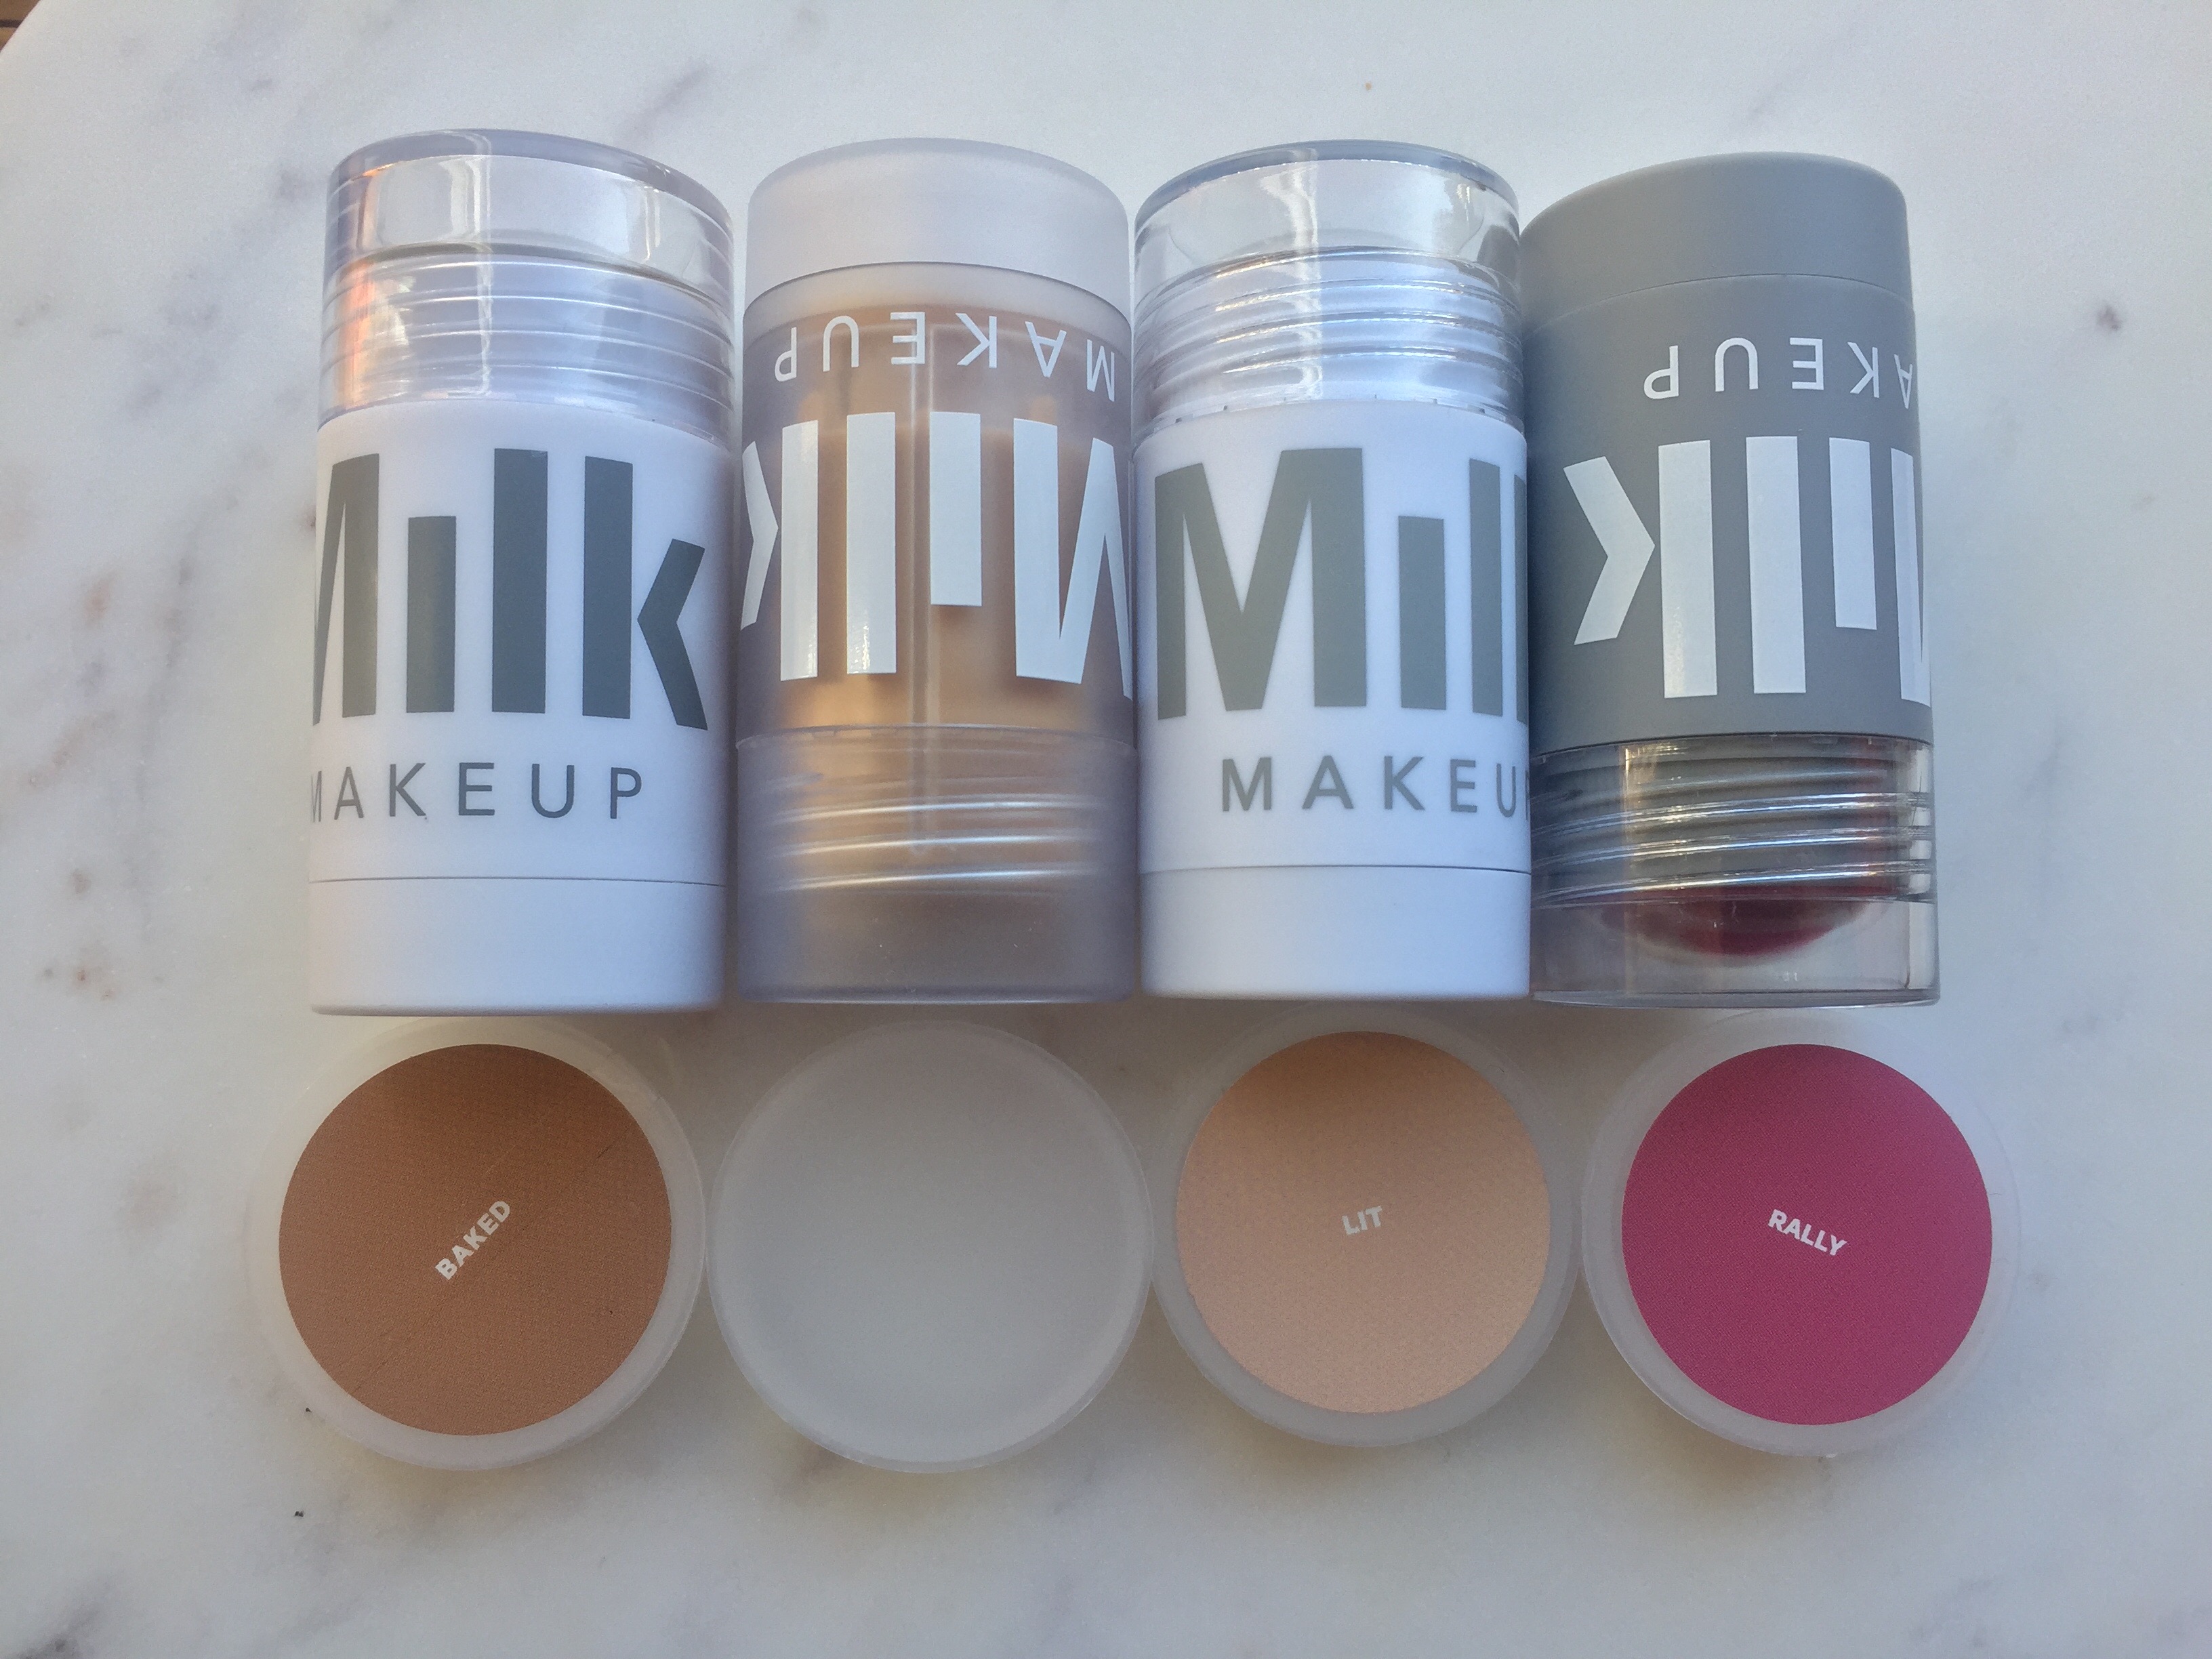 Milk Makeup Review: Matte Bronzer, Lip + Cheek, Highlighter & Blur Stick - Face Made Up Beauty Product Reviews, Makeup Tutorial Videos & Lifestyle